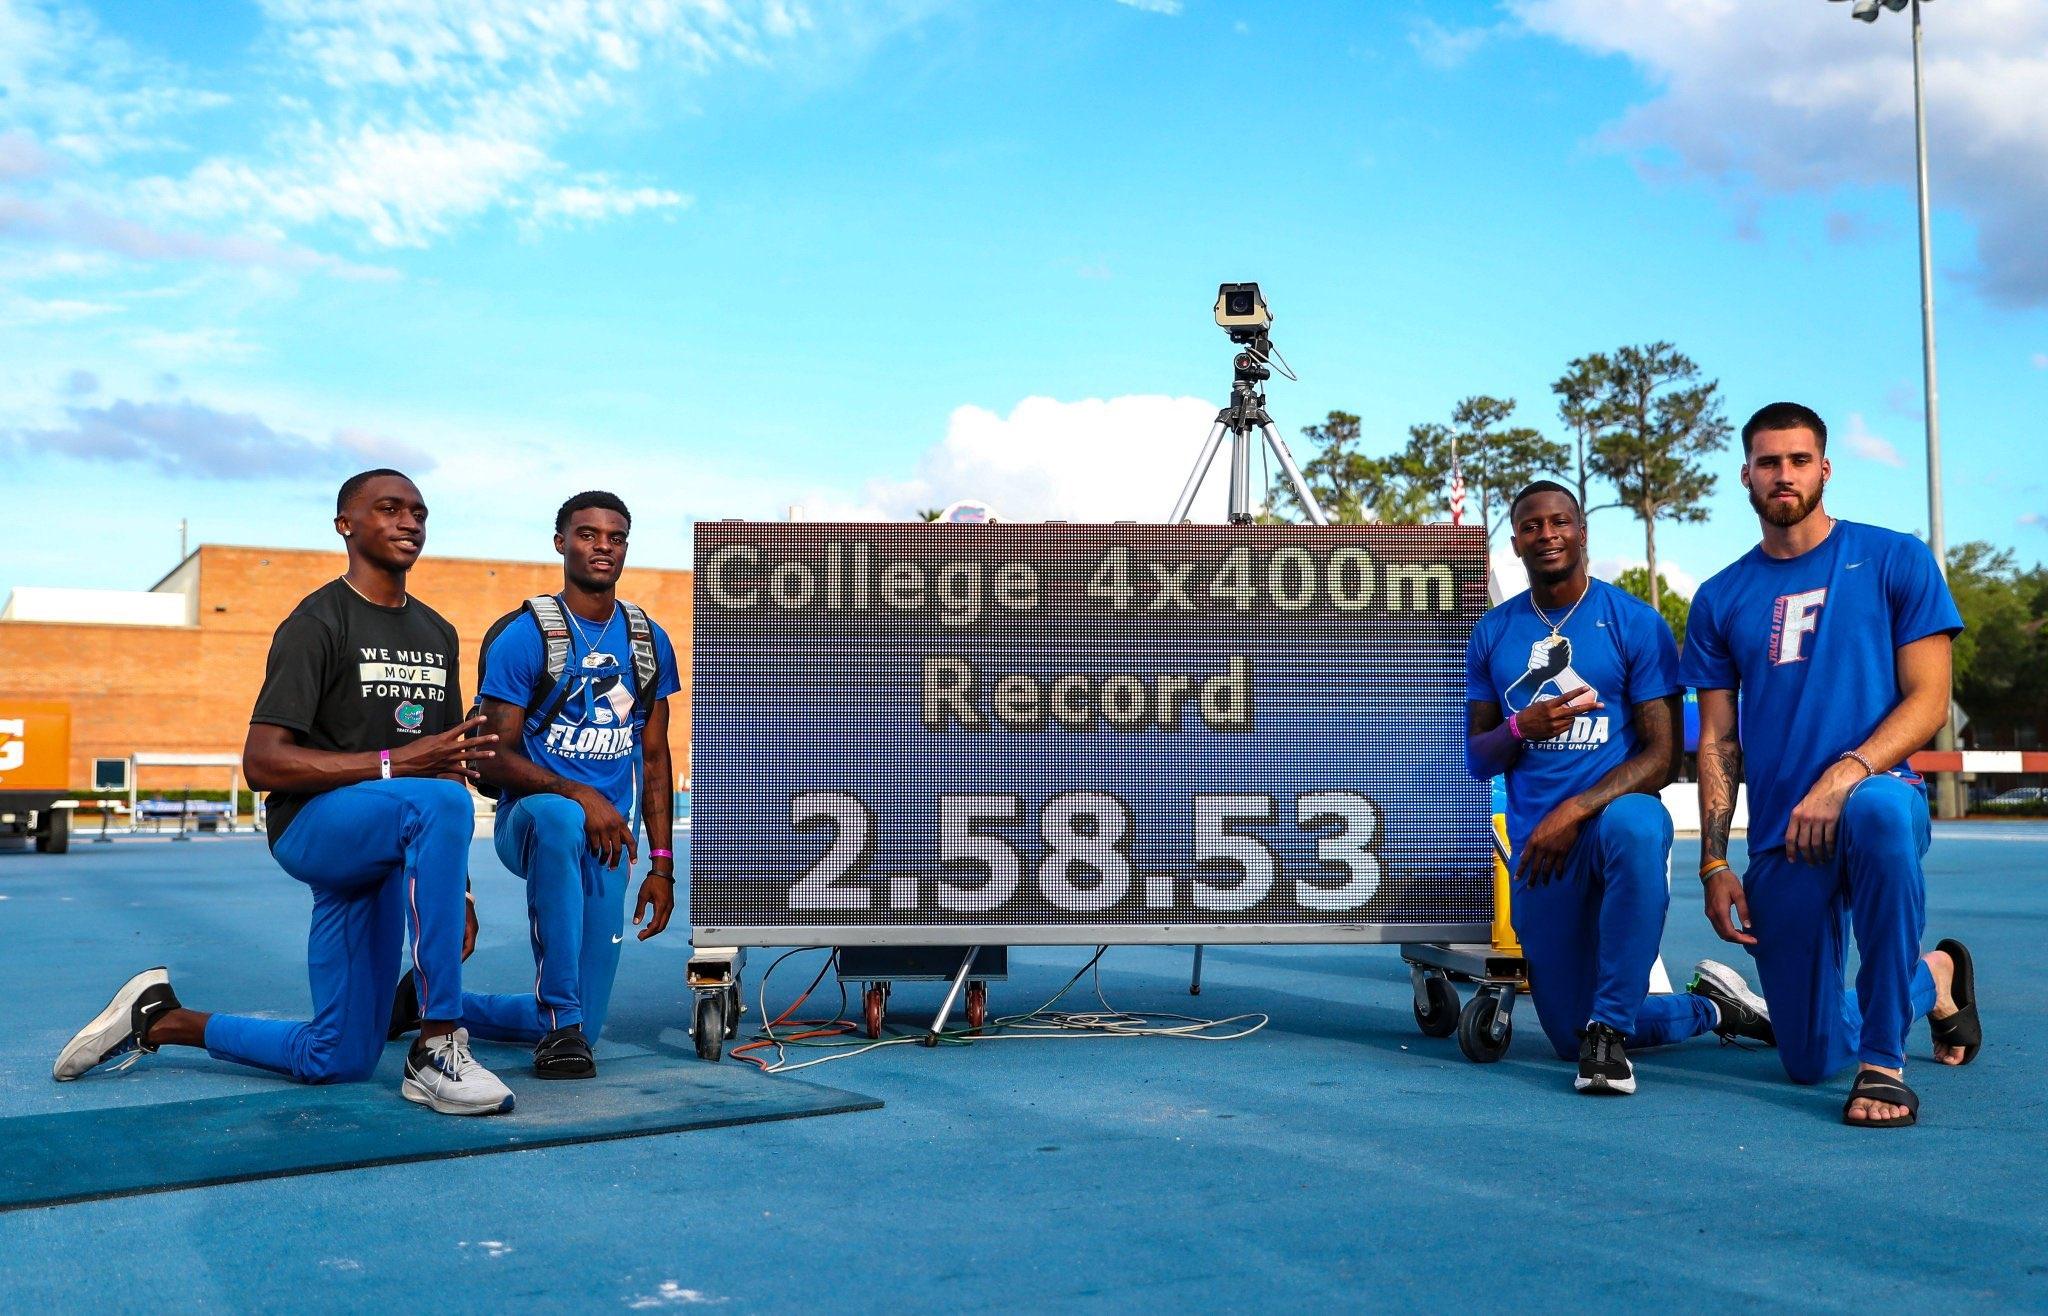 WATCH: Florida's men's 4x400 meter relay breaks collegiate record